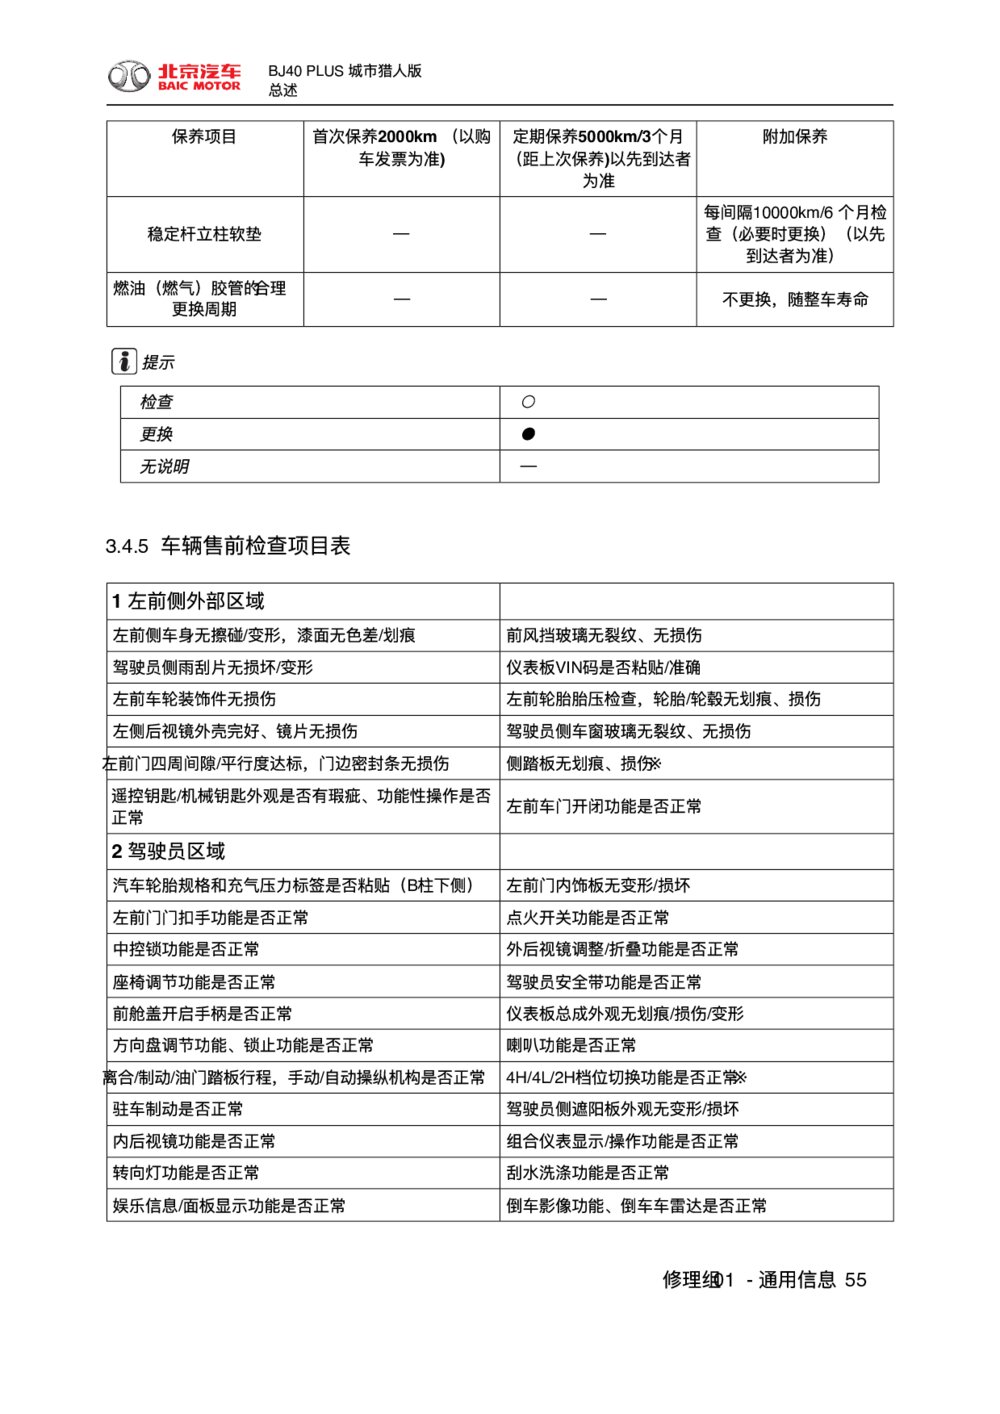 2018款北京BJ40 PLUS车辆售前检查项目表1